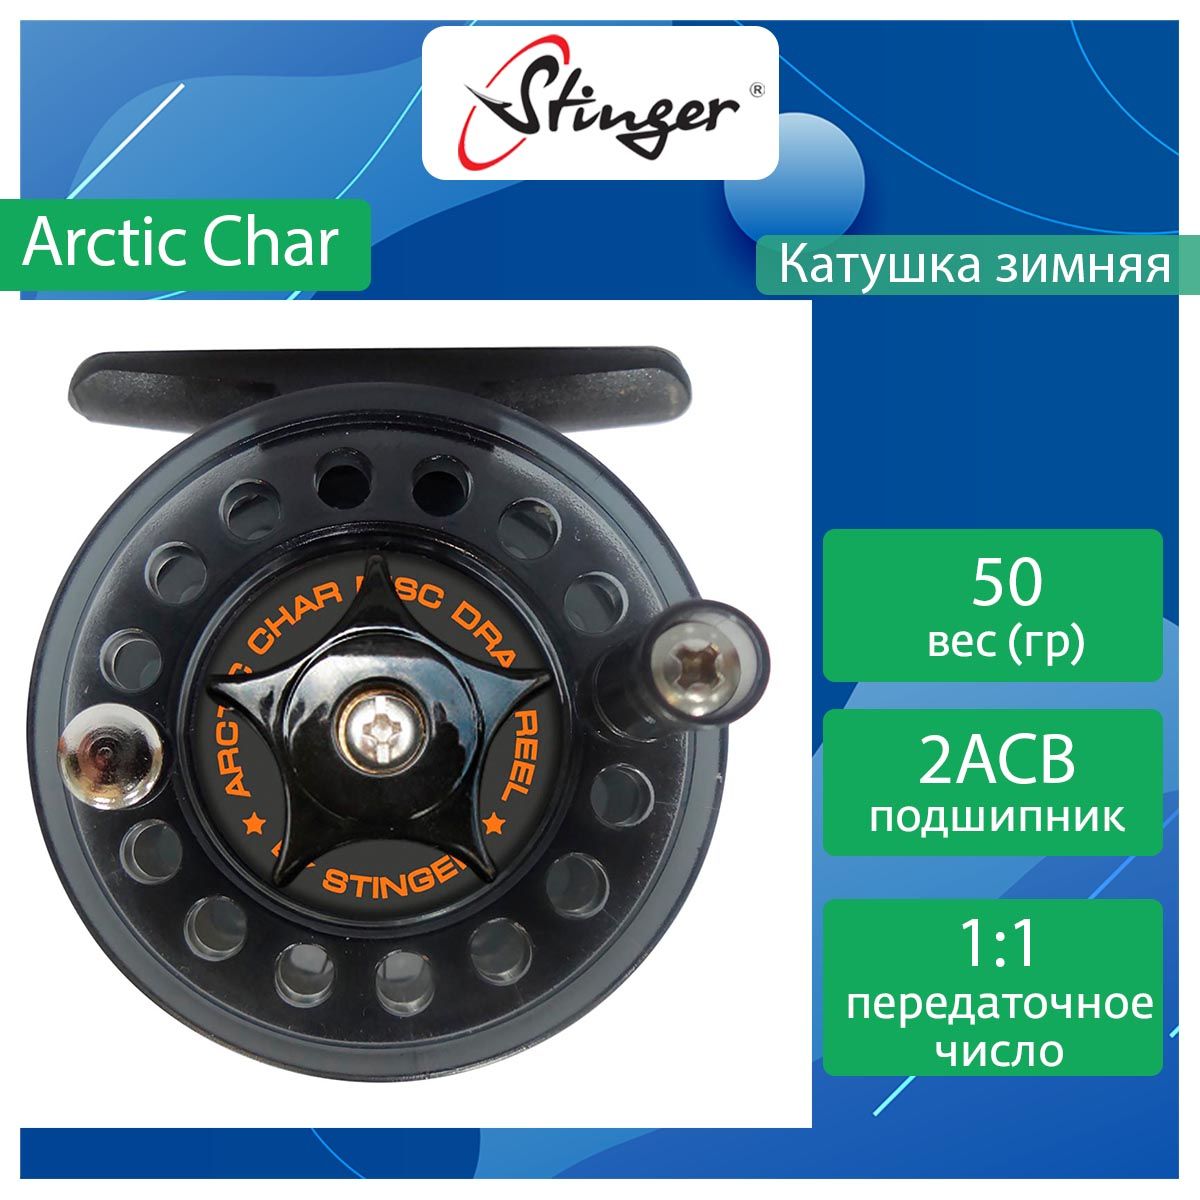 Катушка для зимней рыбалки Stinger Arctic Char ef37585